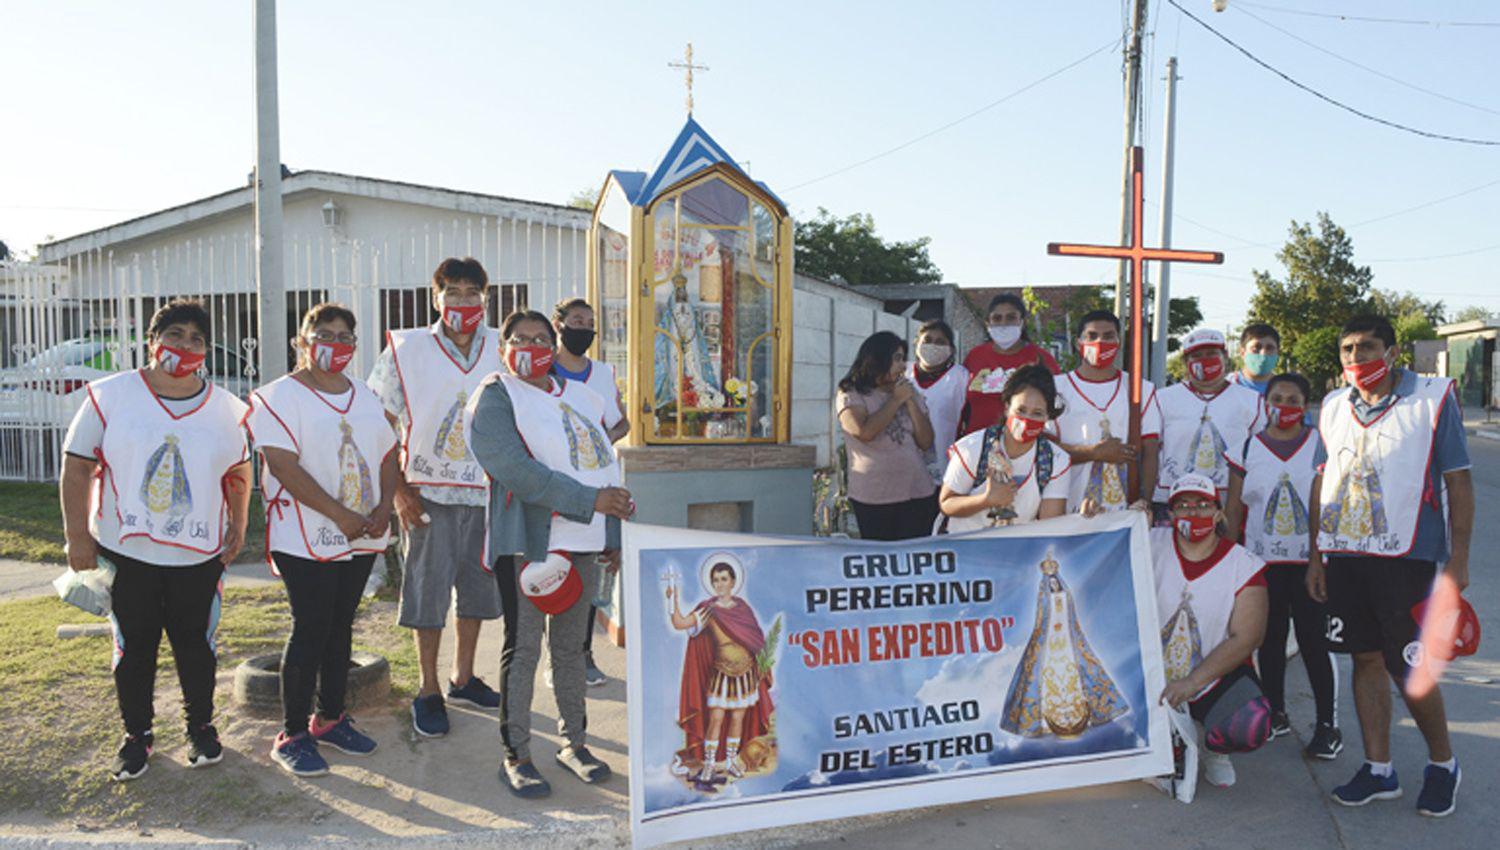 Hoy seraacute la llegada simboacutelica de peregrinos a la Virgen del Valle